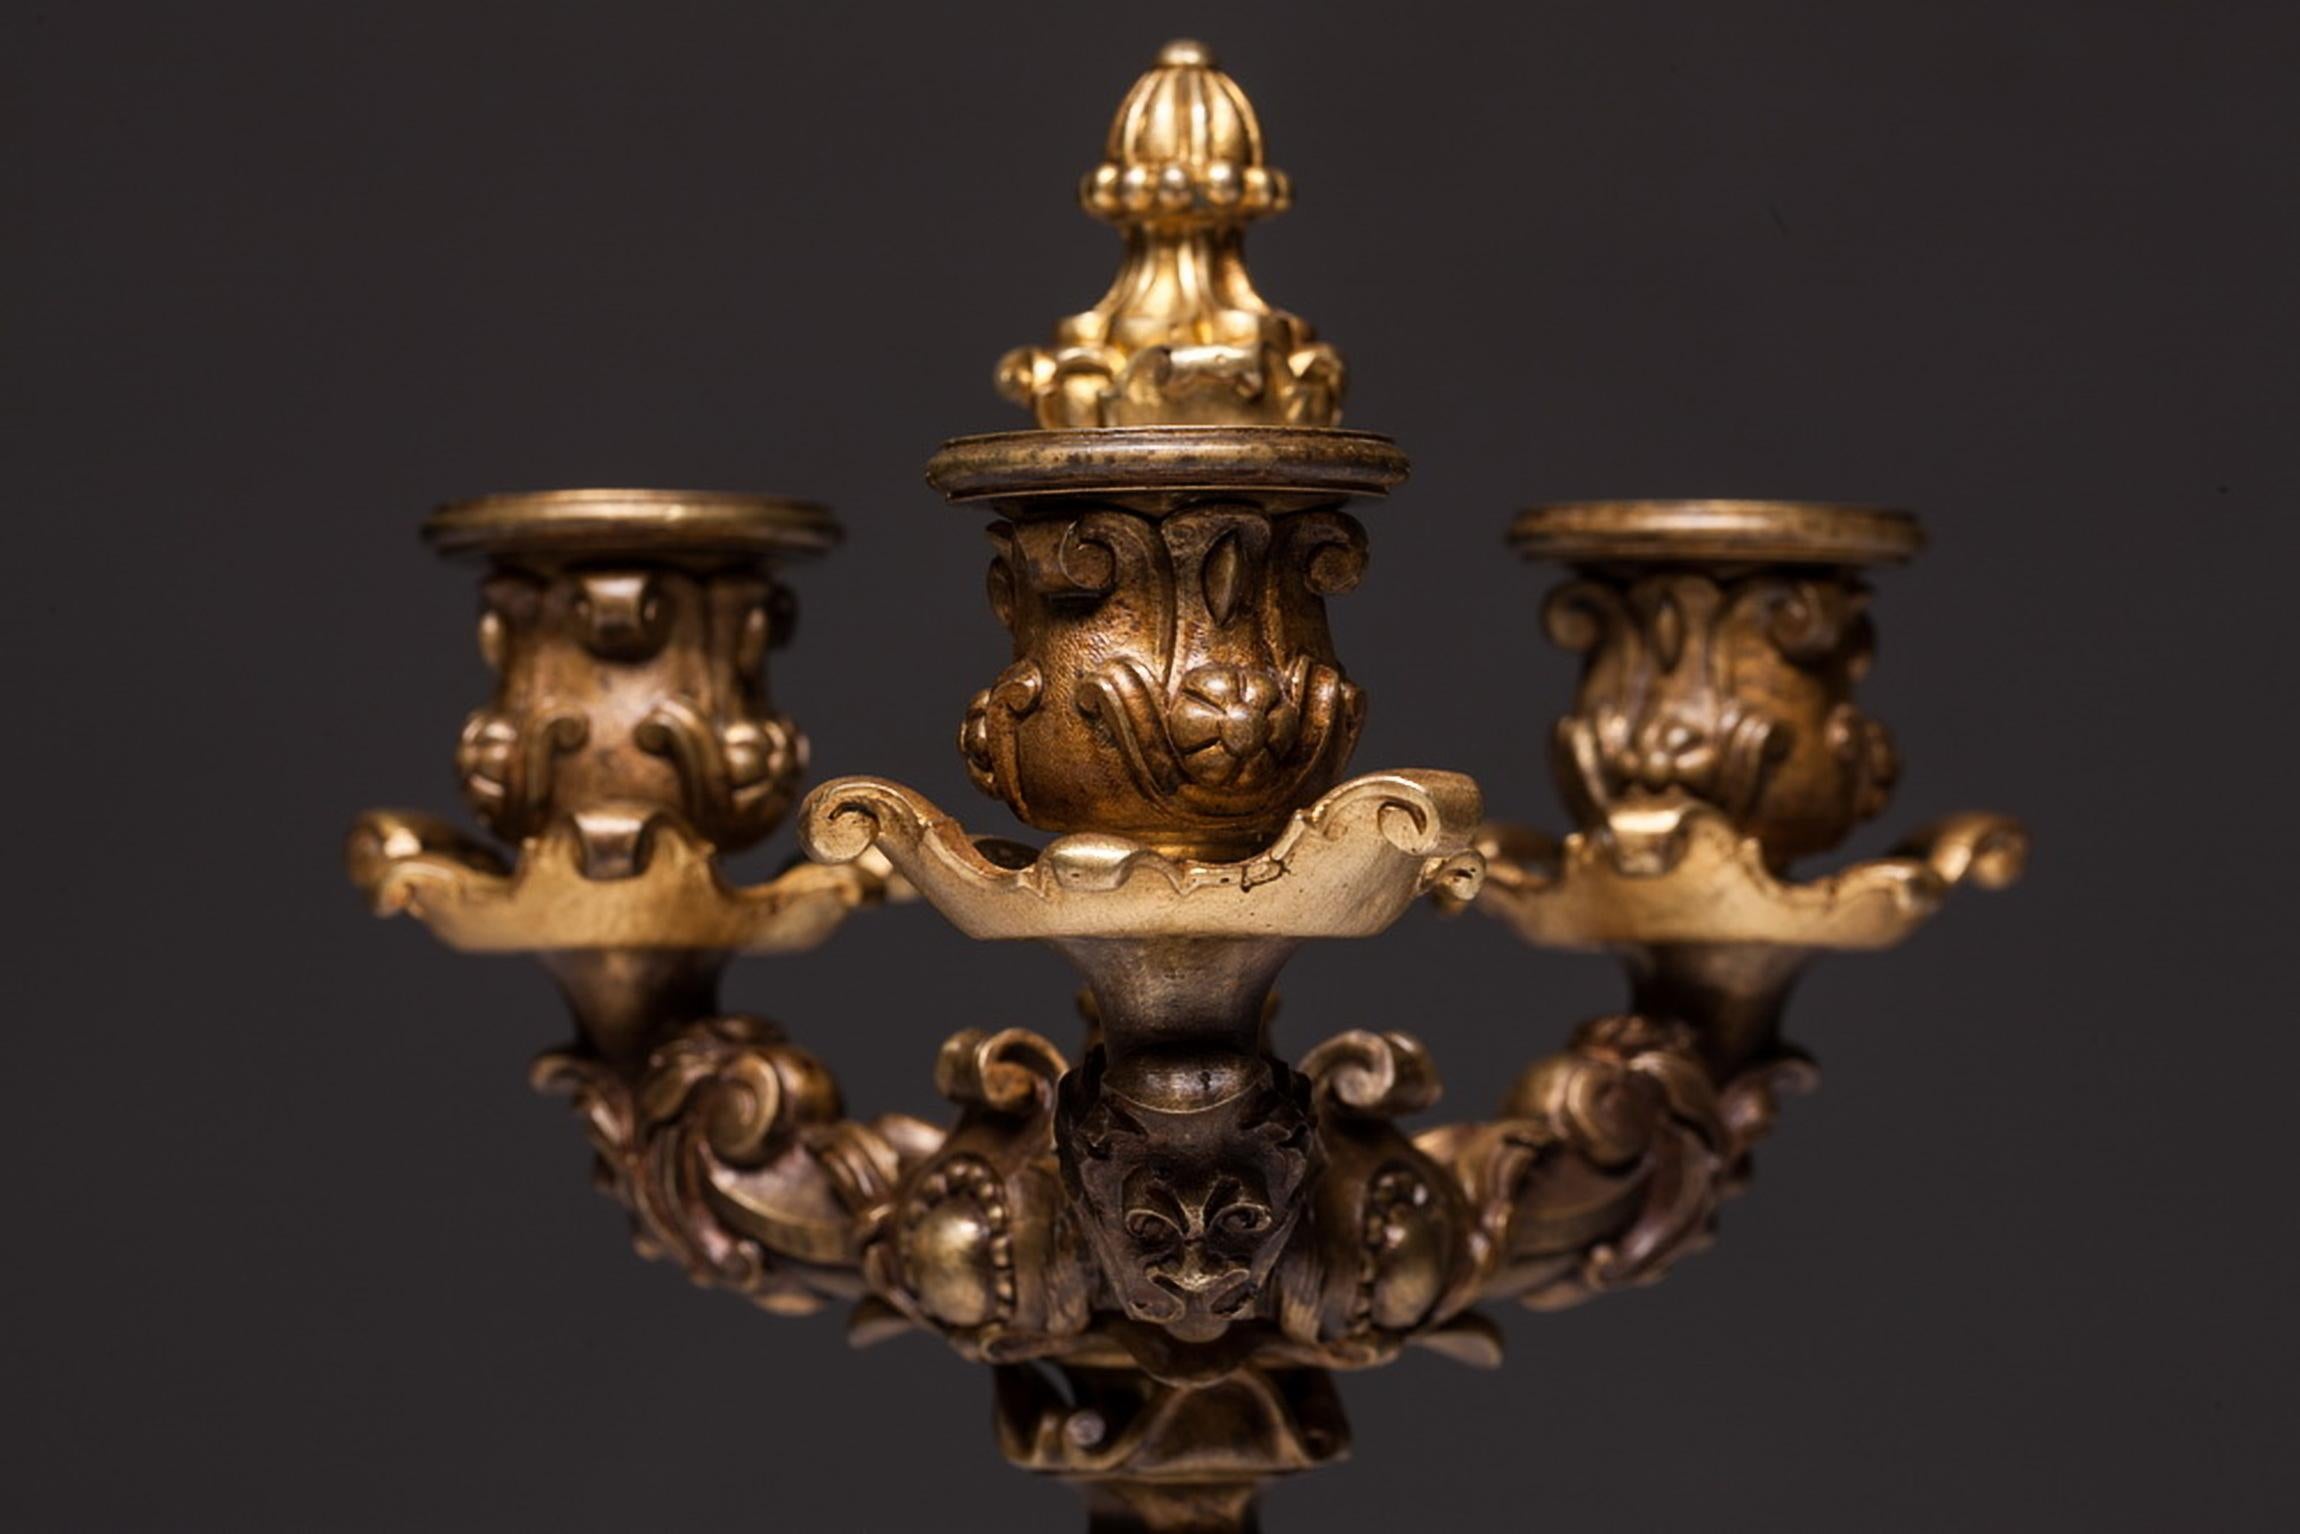 19th Century French Empire Gilt Doré Bronze Empire Candelabras a Pair For Sale 2